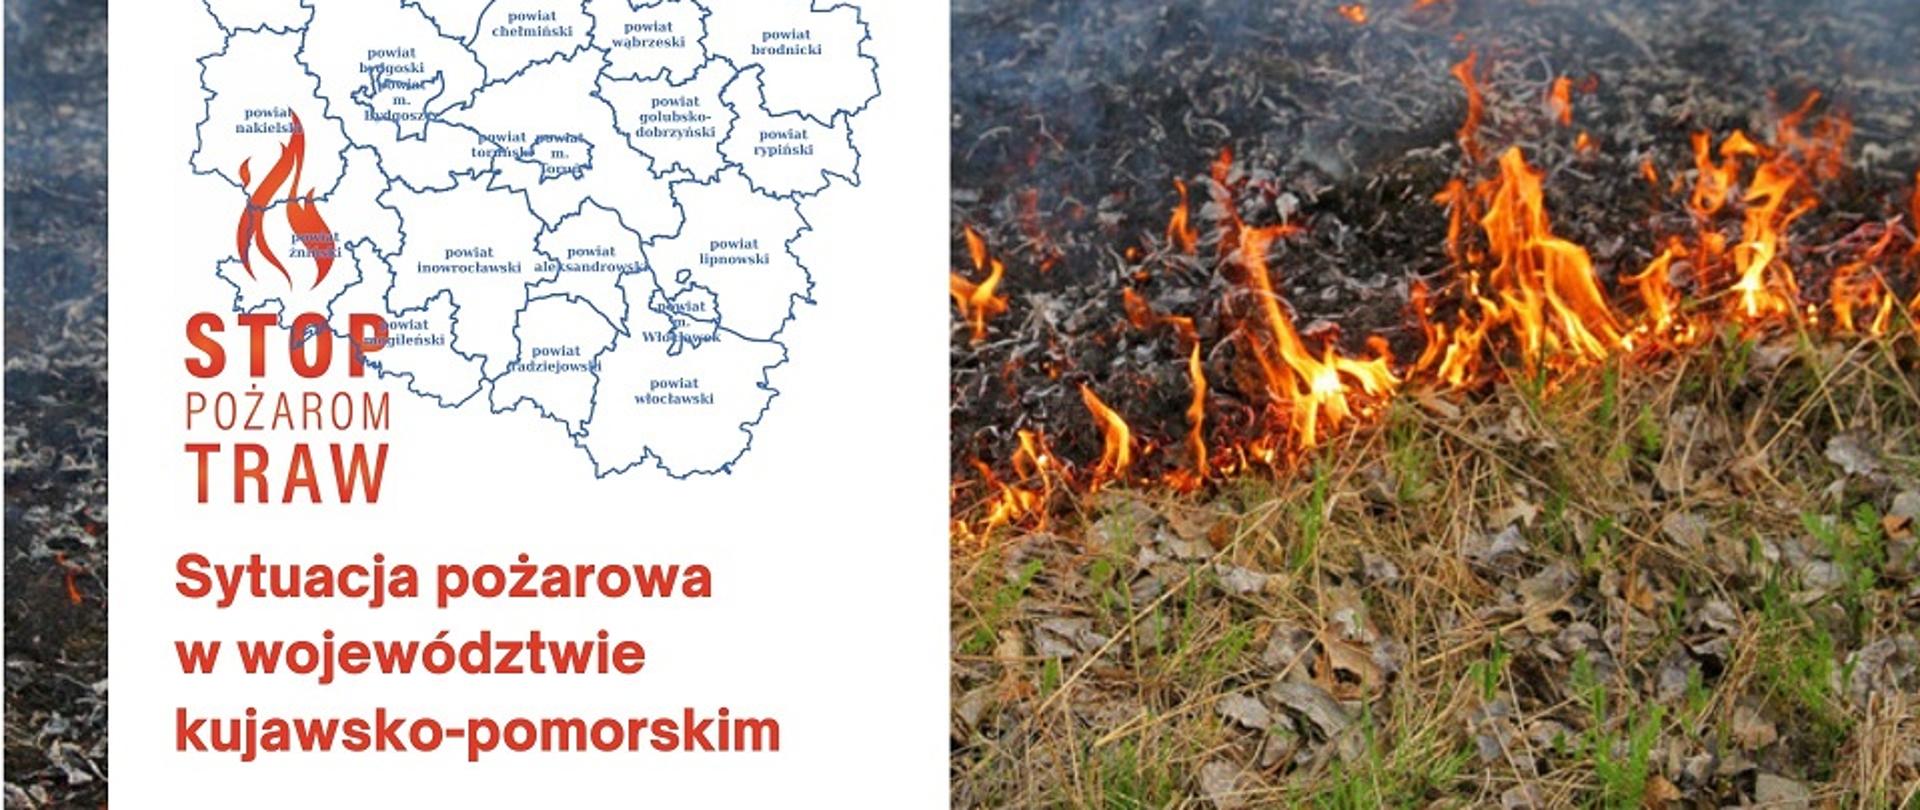 zdjęcie - plakat - płonąca trawa, oraz napis informujący o sytuacji pożarowej w województwie.